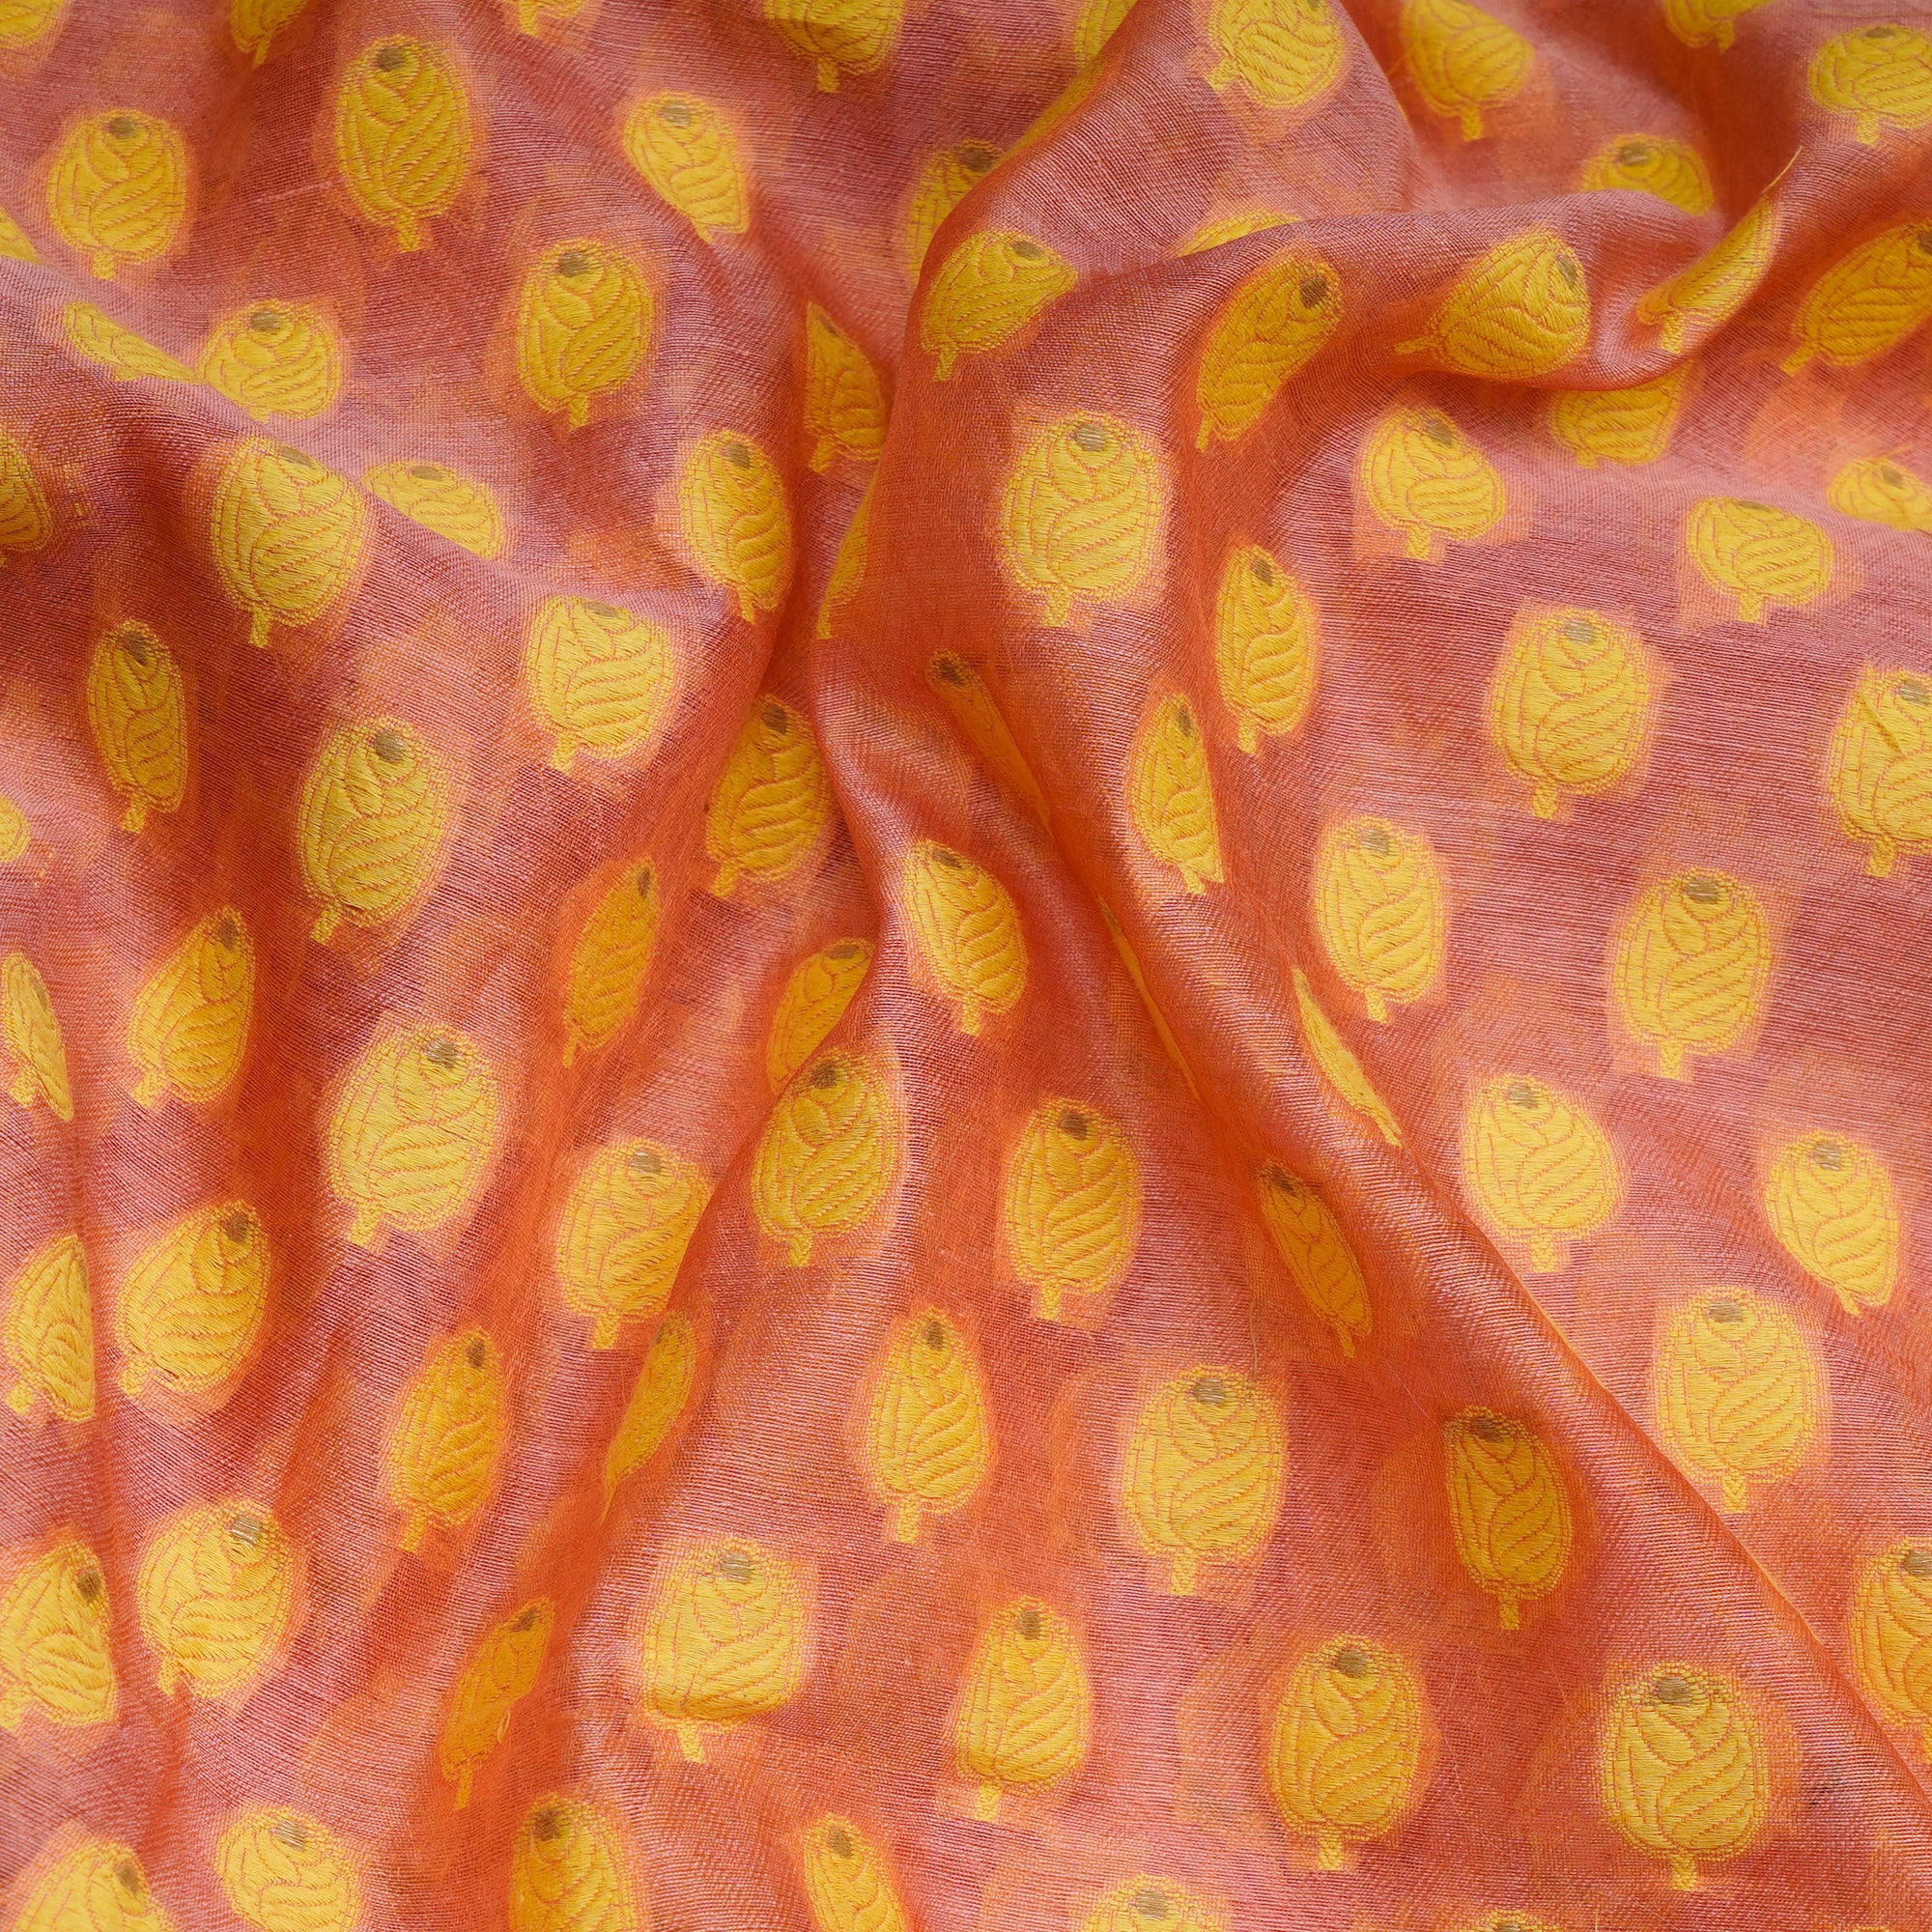 Peach-Yellow Booti Pattern Handwoven Meenakari Chanderi Brocade Fabric